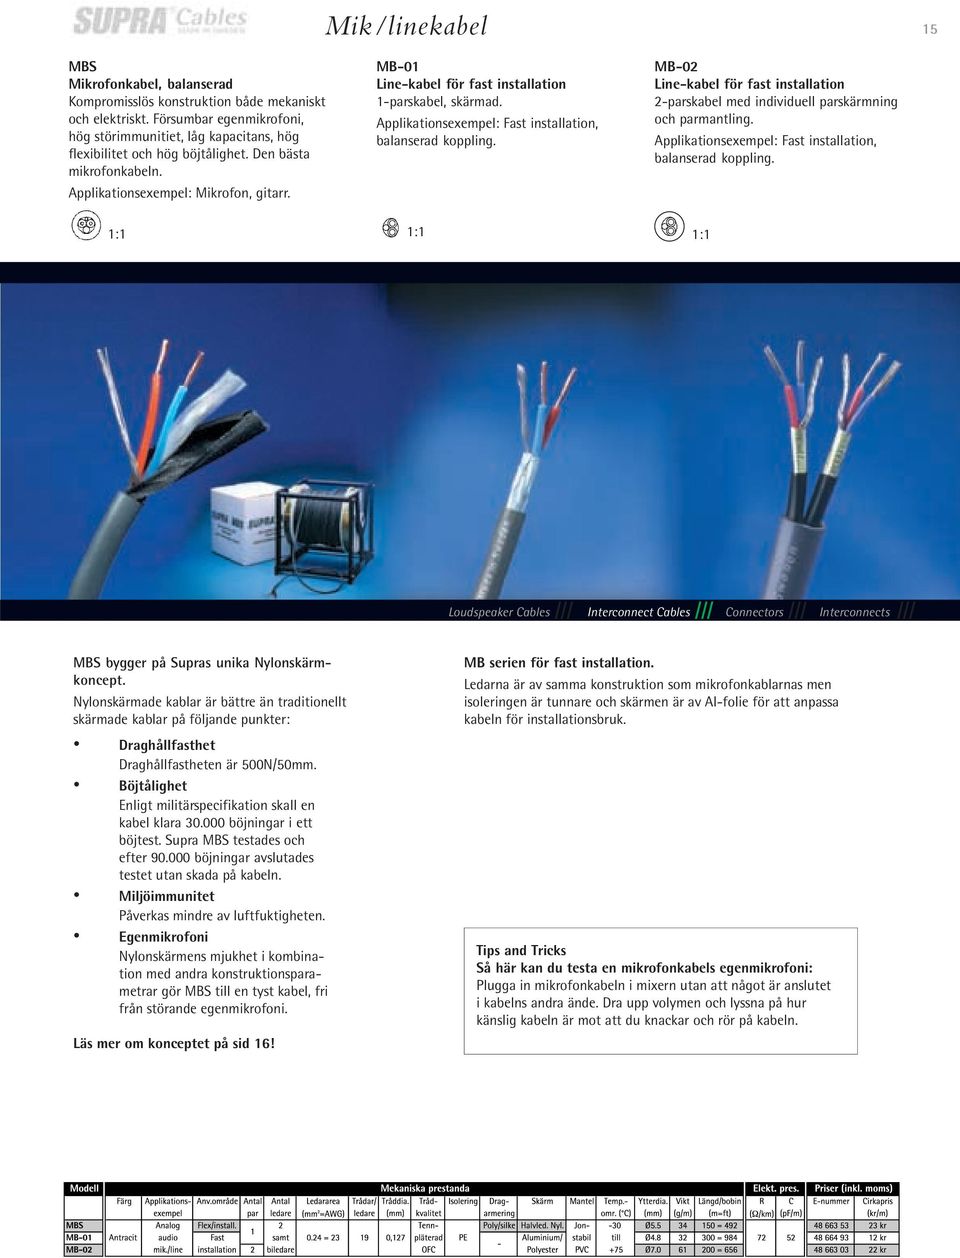 MB-01 Line-kabel för fast installation 1-parskabel, skärmad. Applikationsexempel: Fast installation, balanserad koppling.